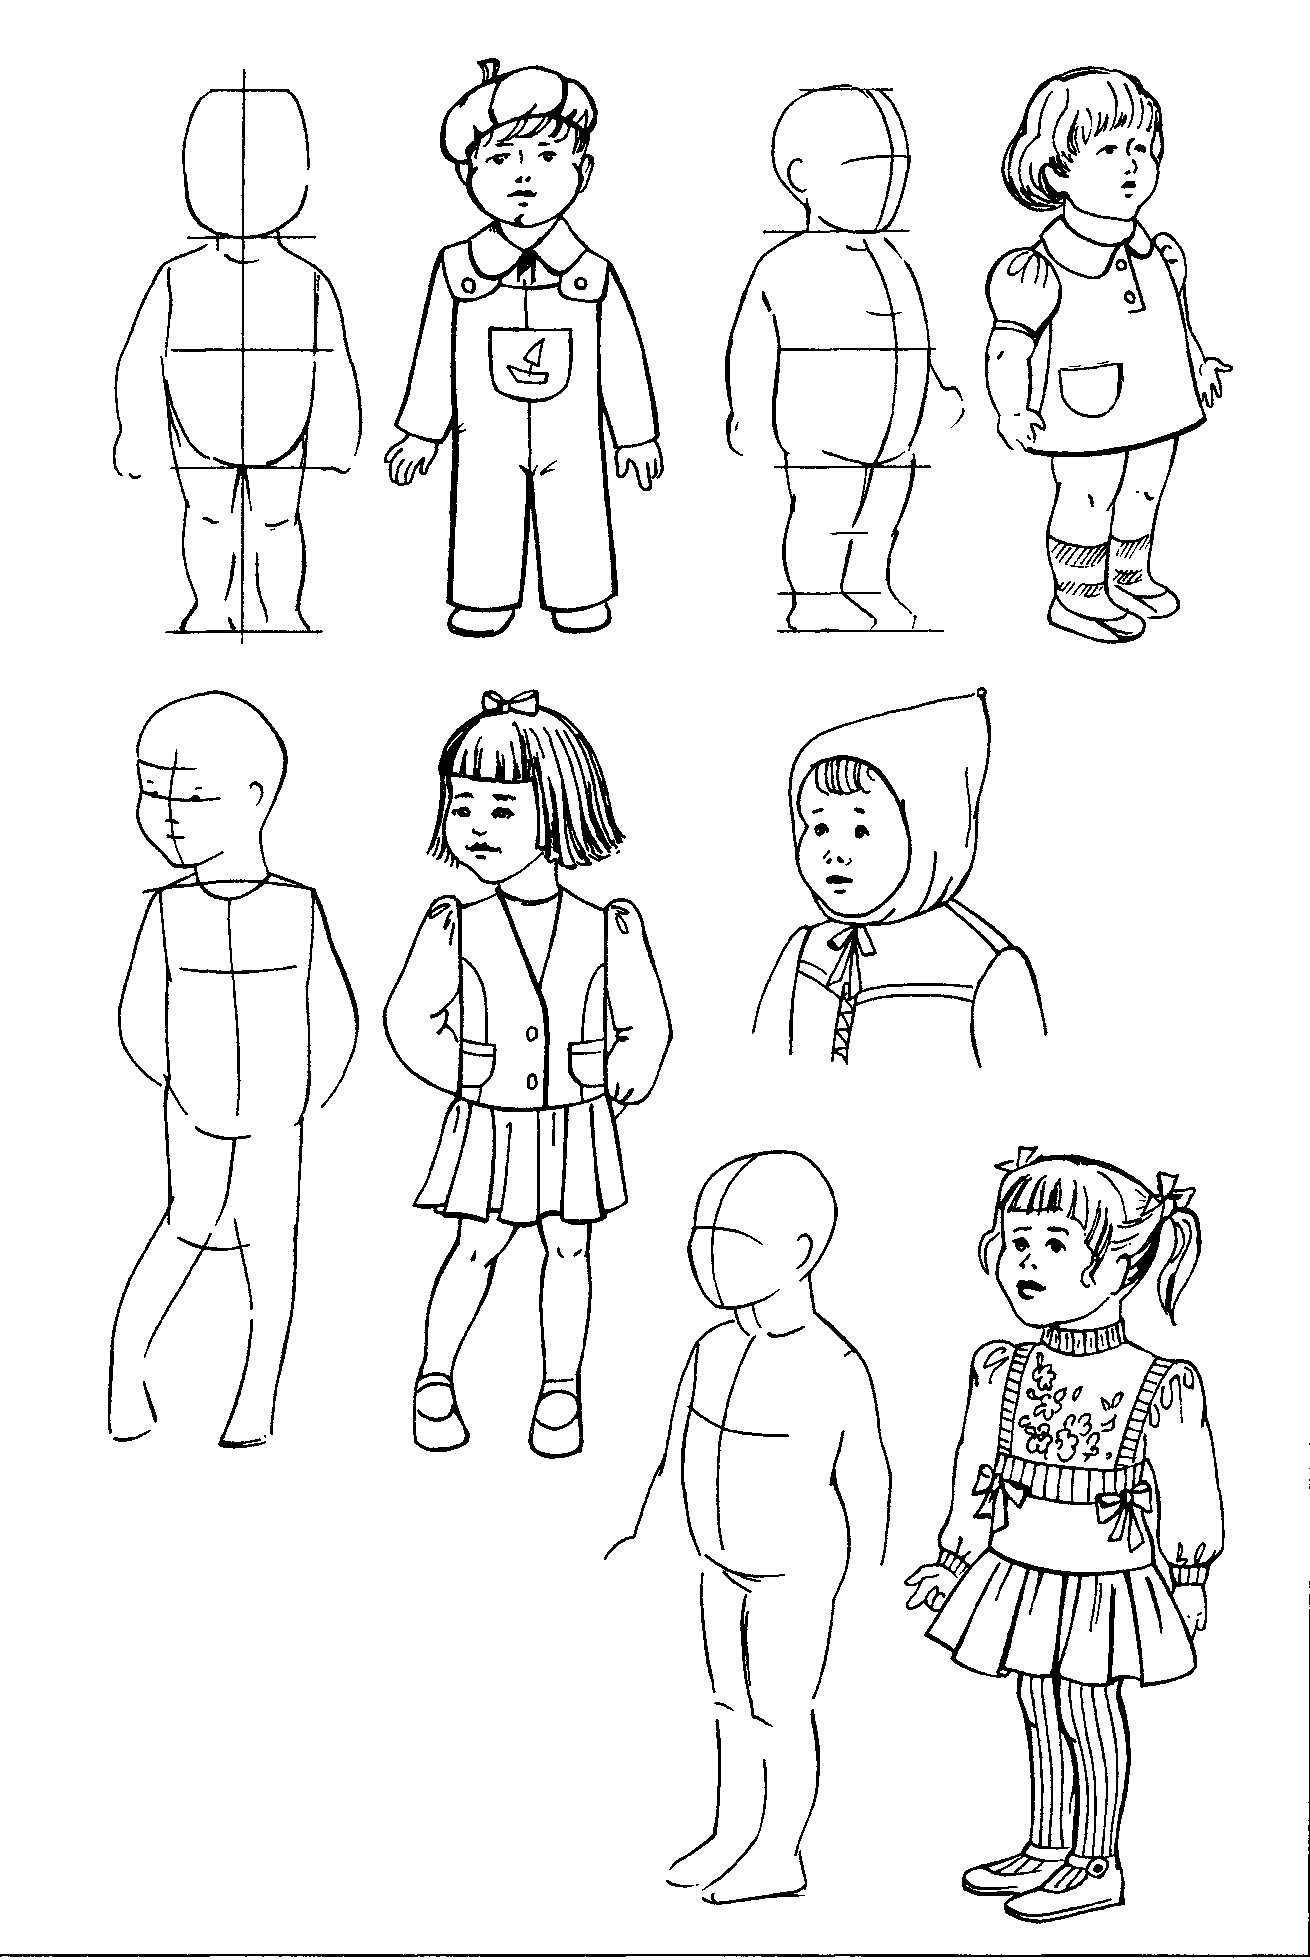 Как нарисовать ребенка поэтапно простым карандашом. Схема рисования человека для детей. Детский рисунок человека. Поэтапное рисование человека для детей. Детские рисунки людей.